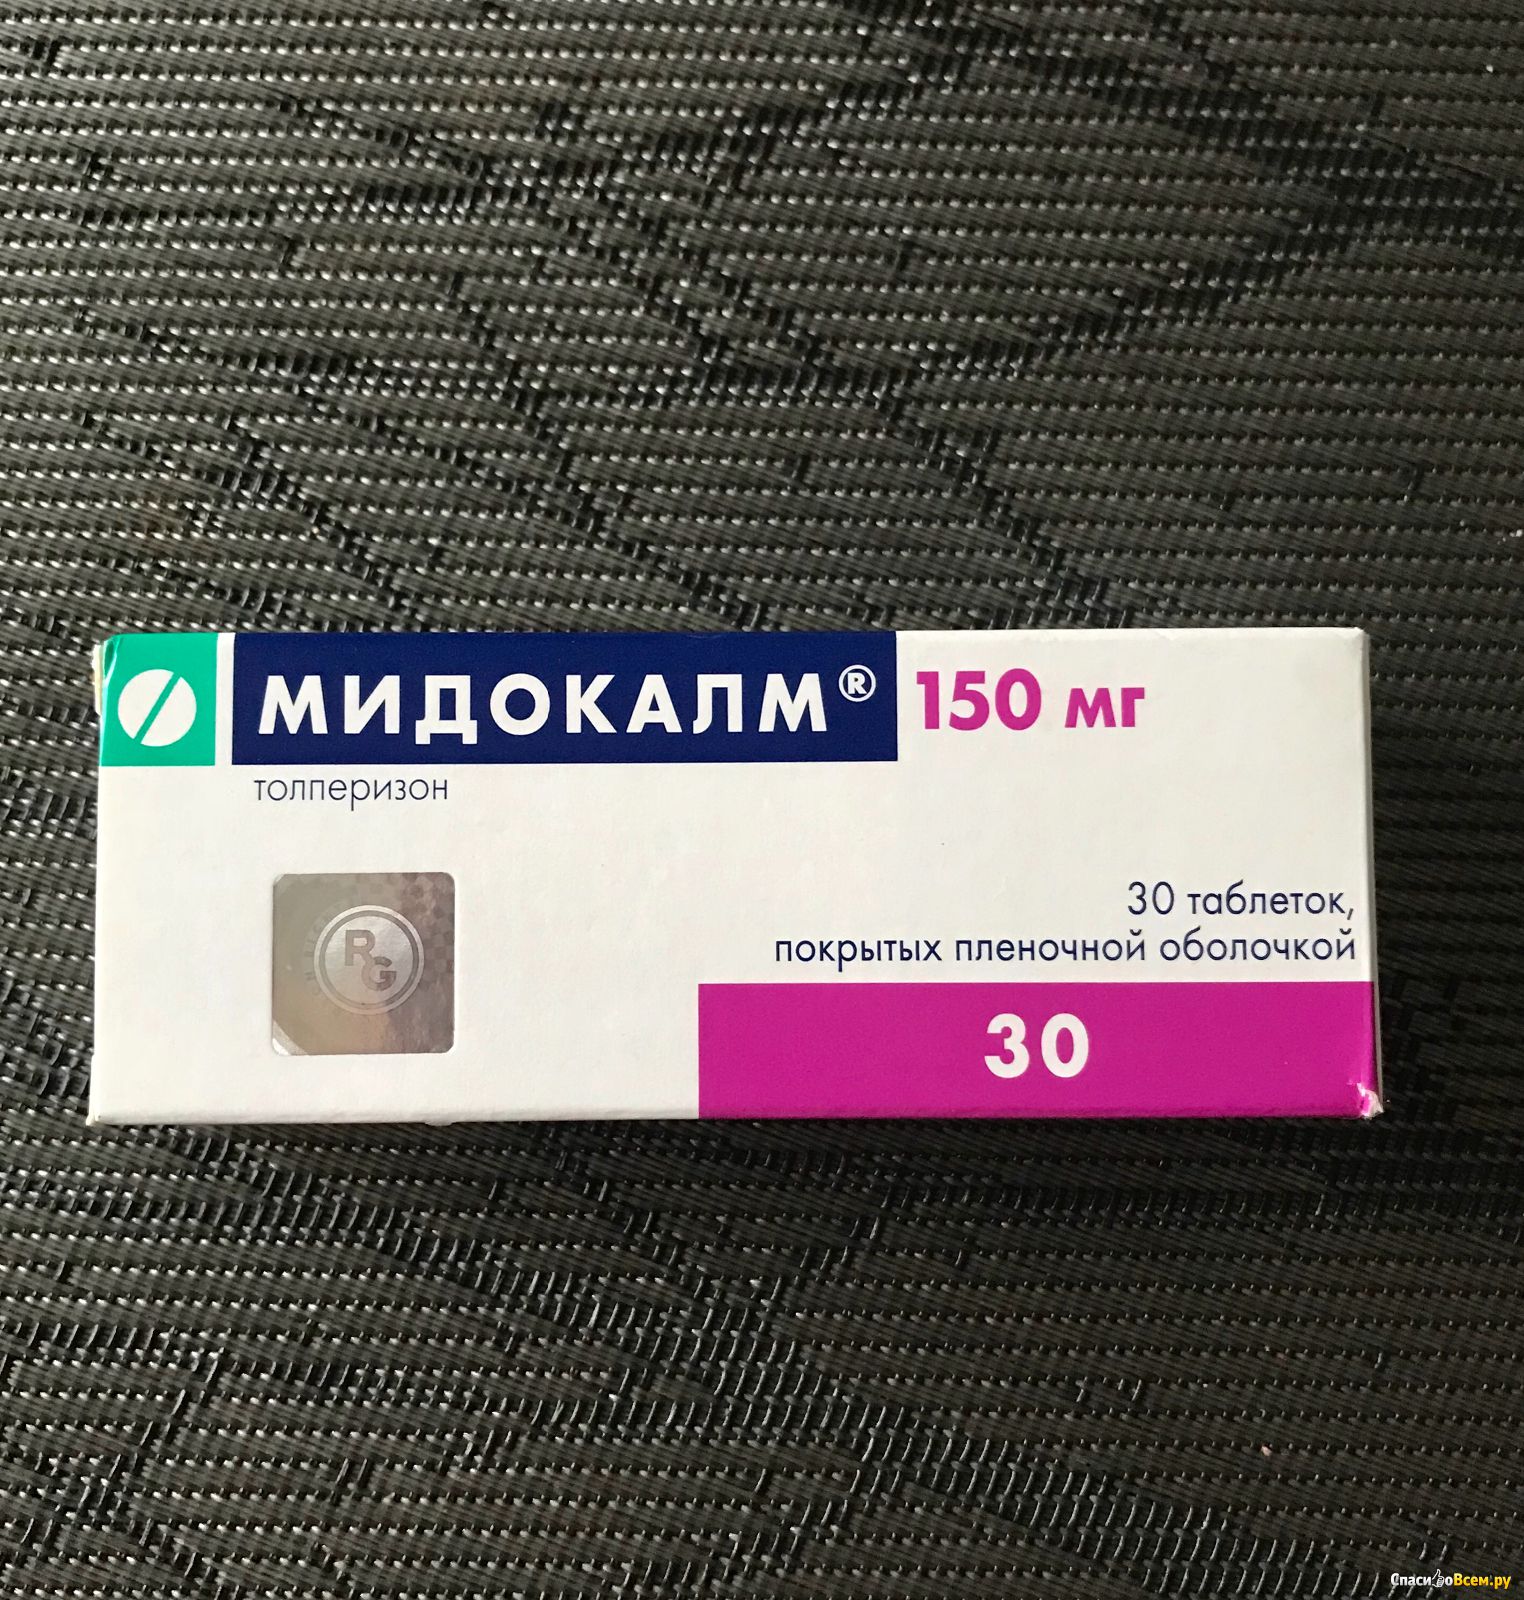 Мидокалм купить в аптеке. Мидокалм табл 150 мг. Мидокалм 50 мг. Препарат мидокалм 150 миллиграмм. Толперизон мидокалм 150 мг.